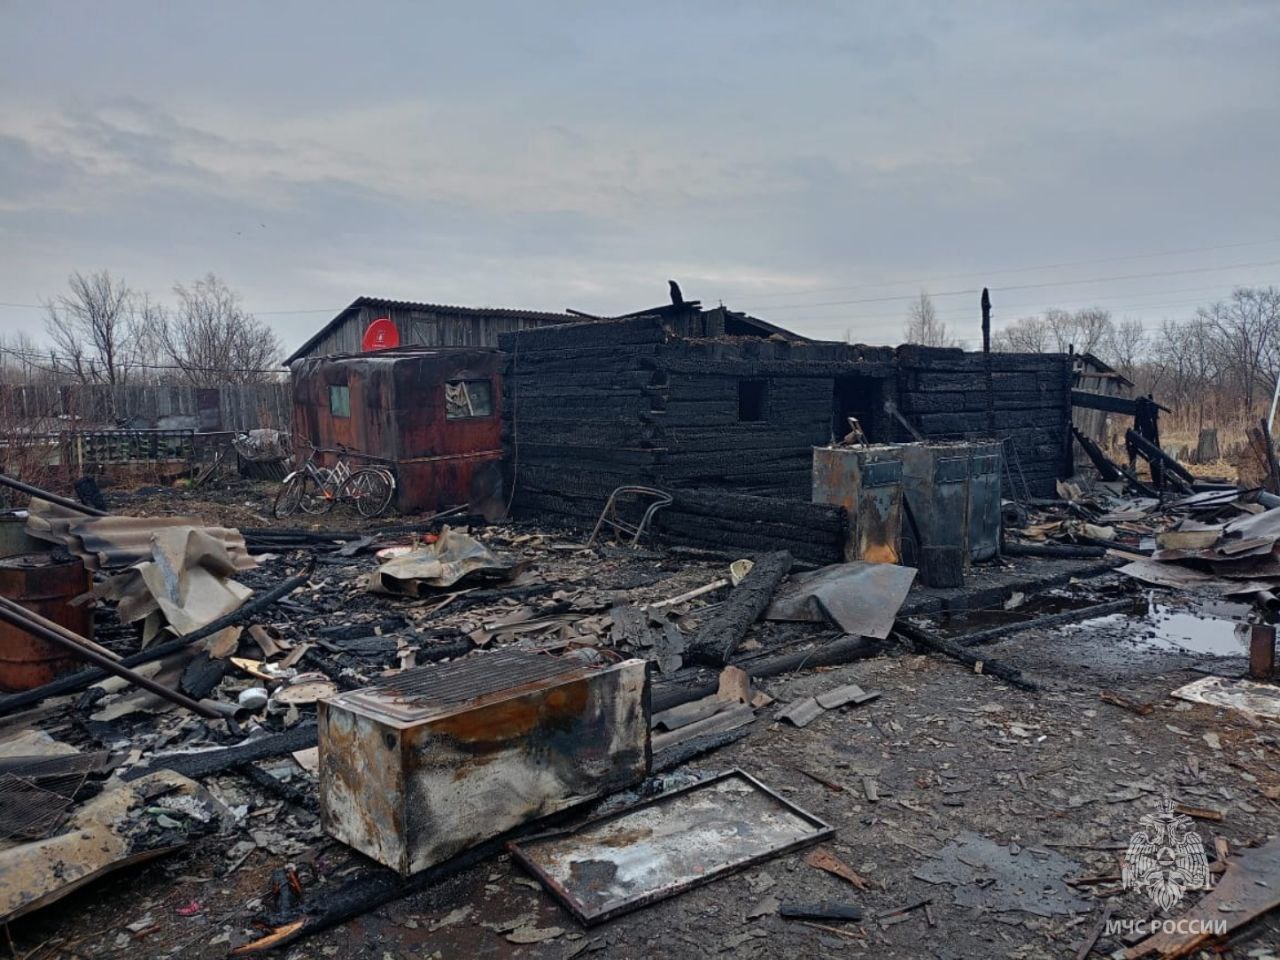 Причины возгорания надворных построек выясняют в Смидовичском районе ЕАО